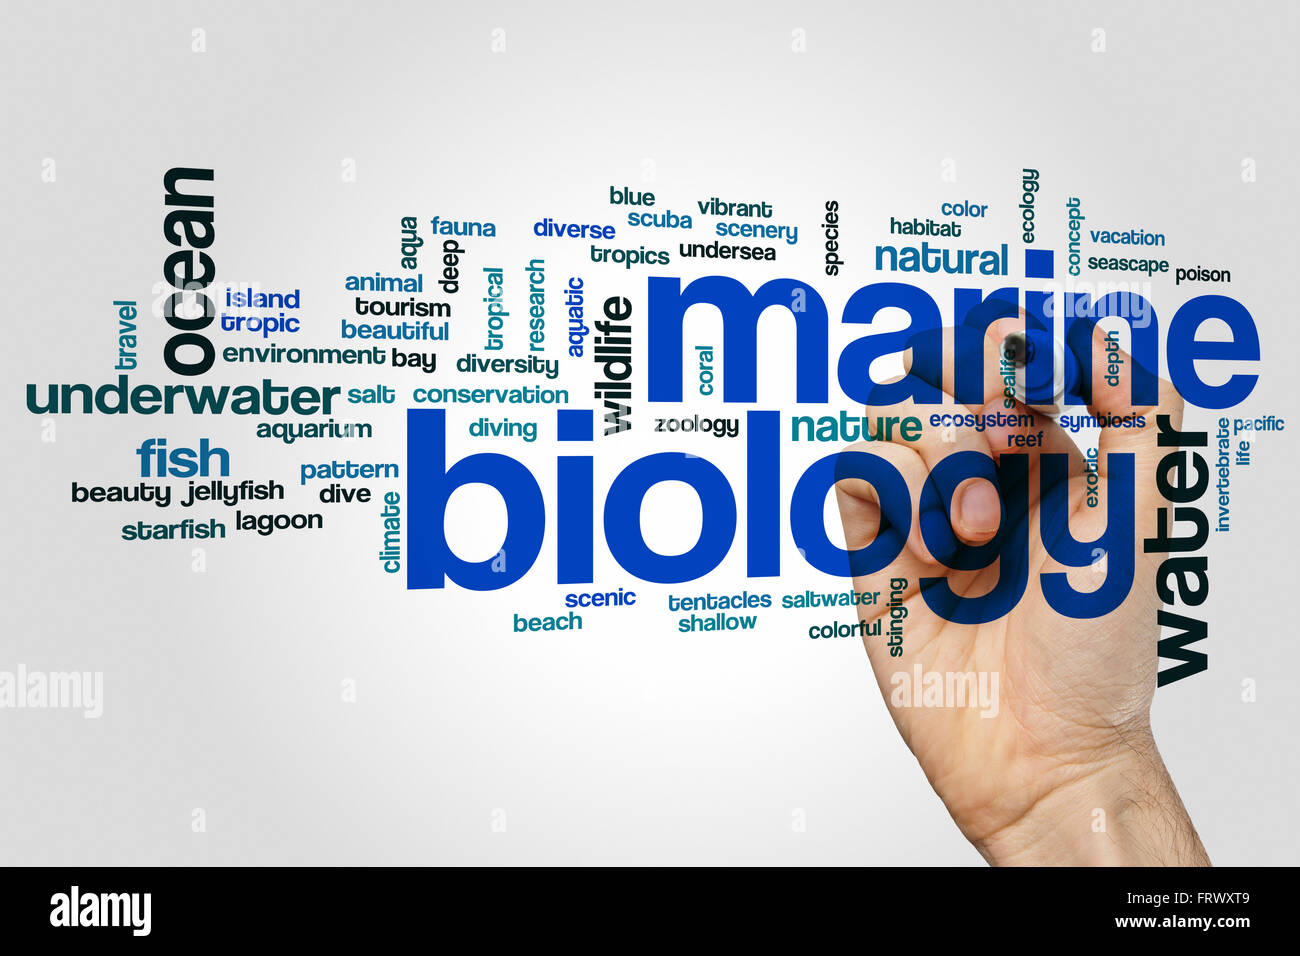 La biologie marine mot concept cloud Banque D'Images